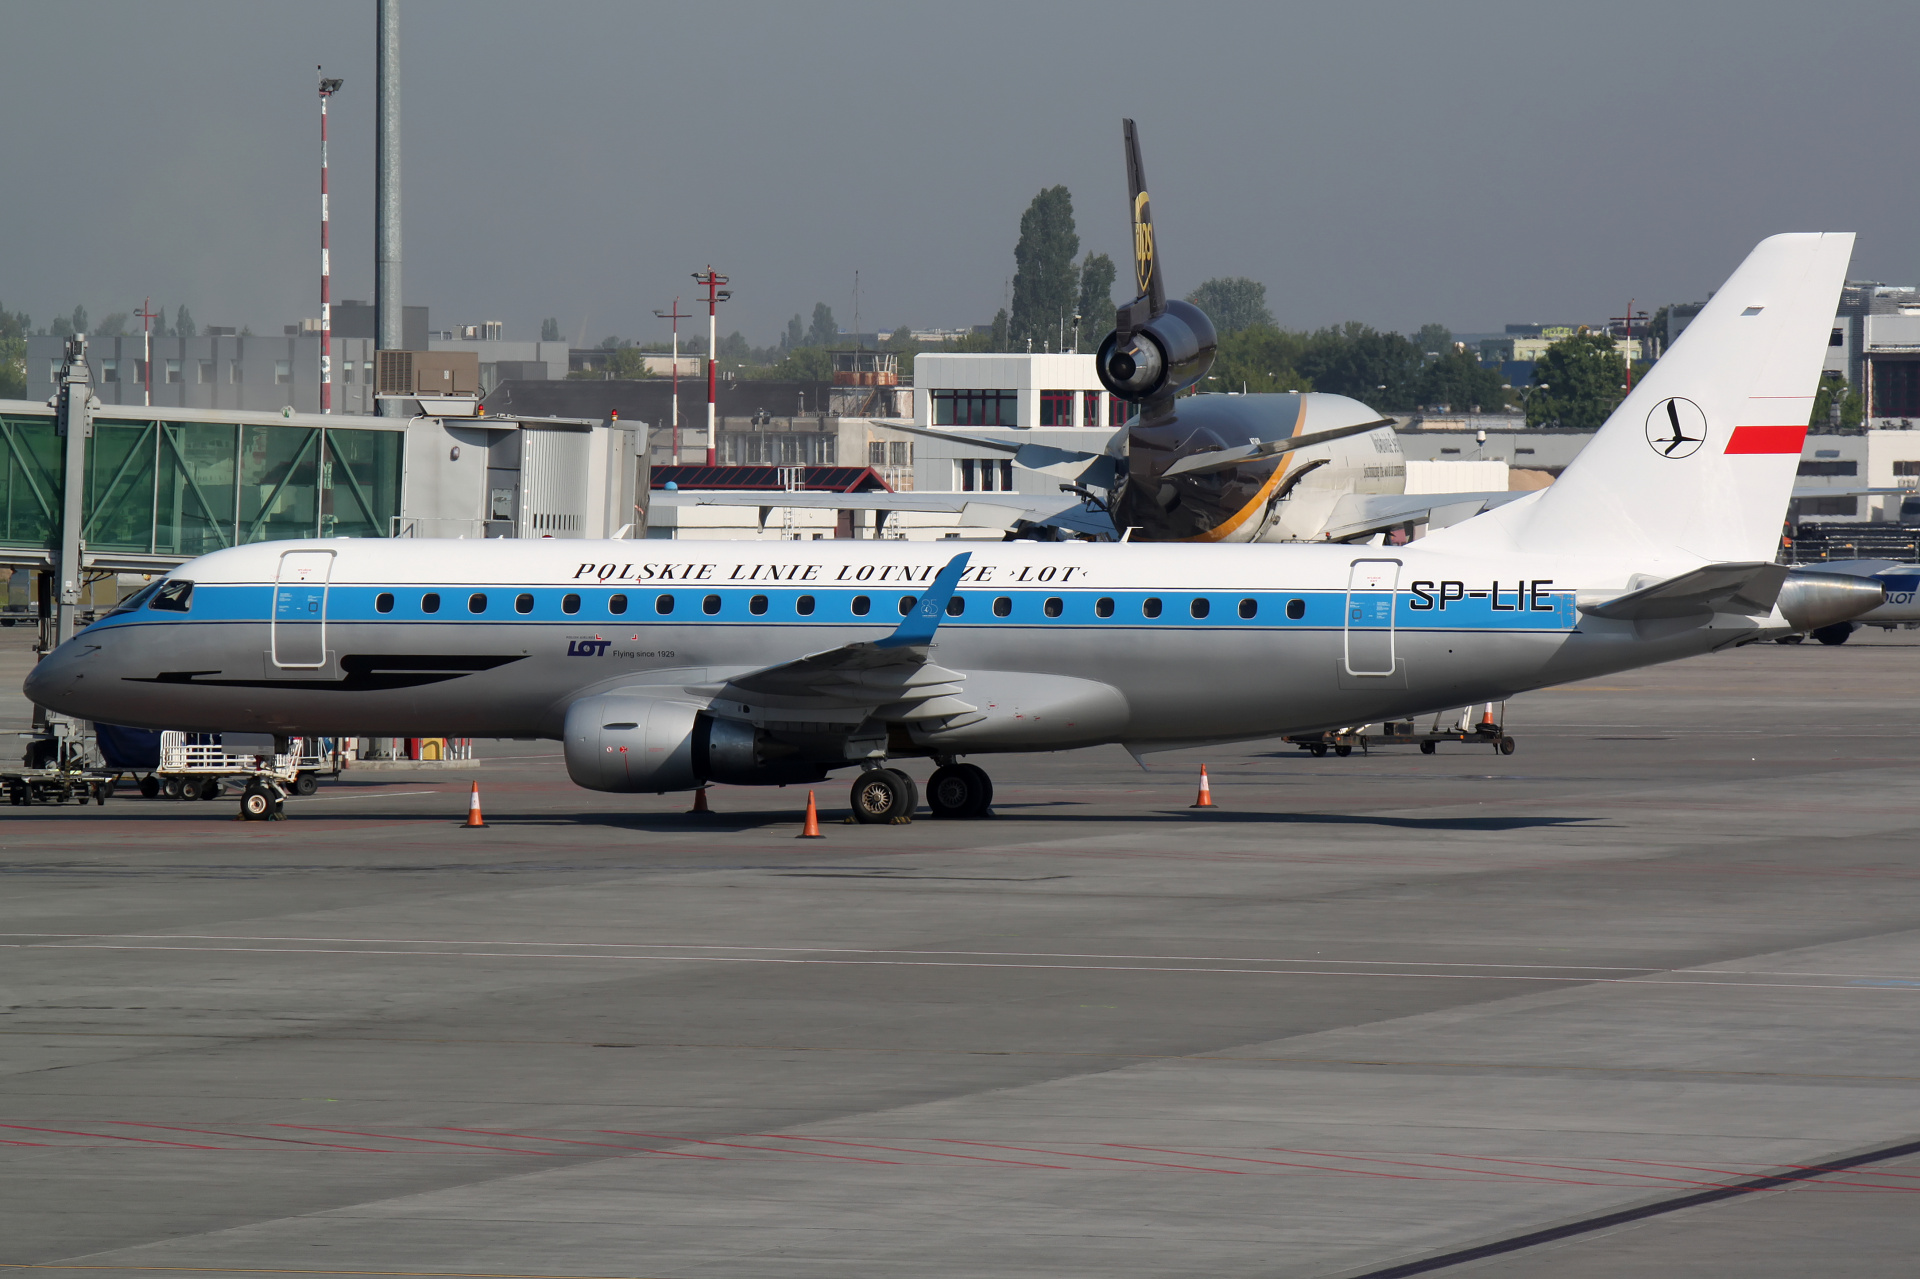 SP-LIE (retro livery) (Aircraft » EPWA Spotting » Embraer E175 » LOT Polish Airlines)